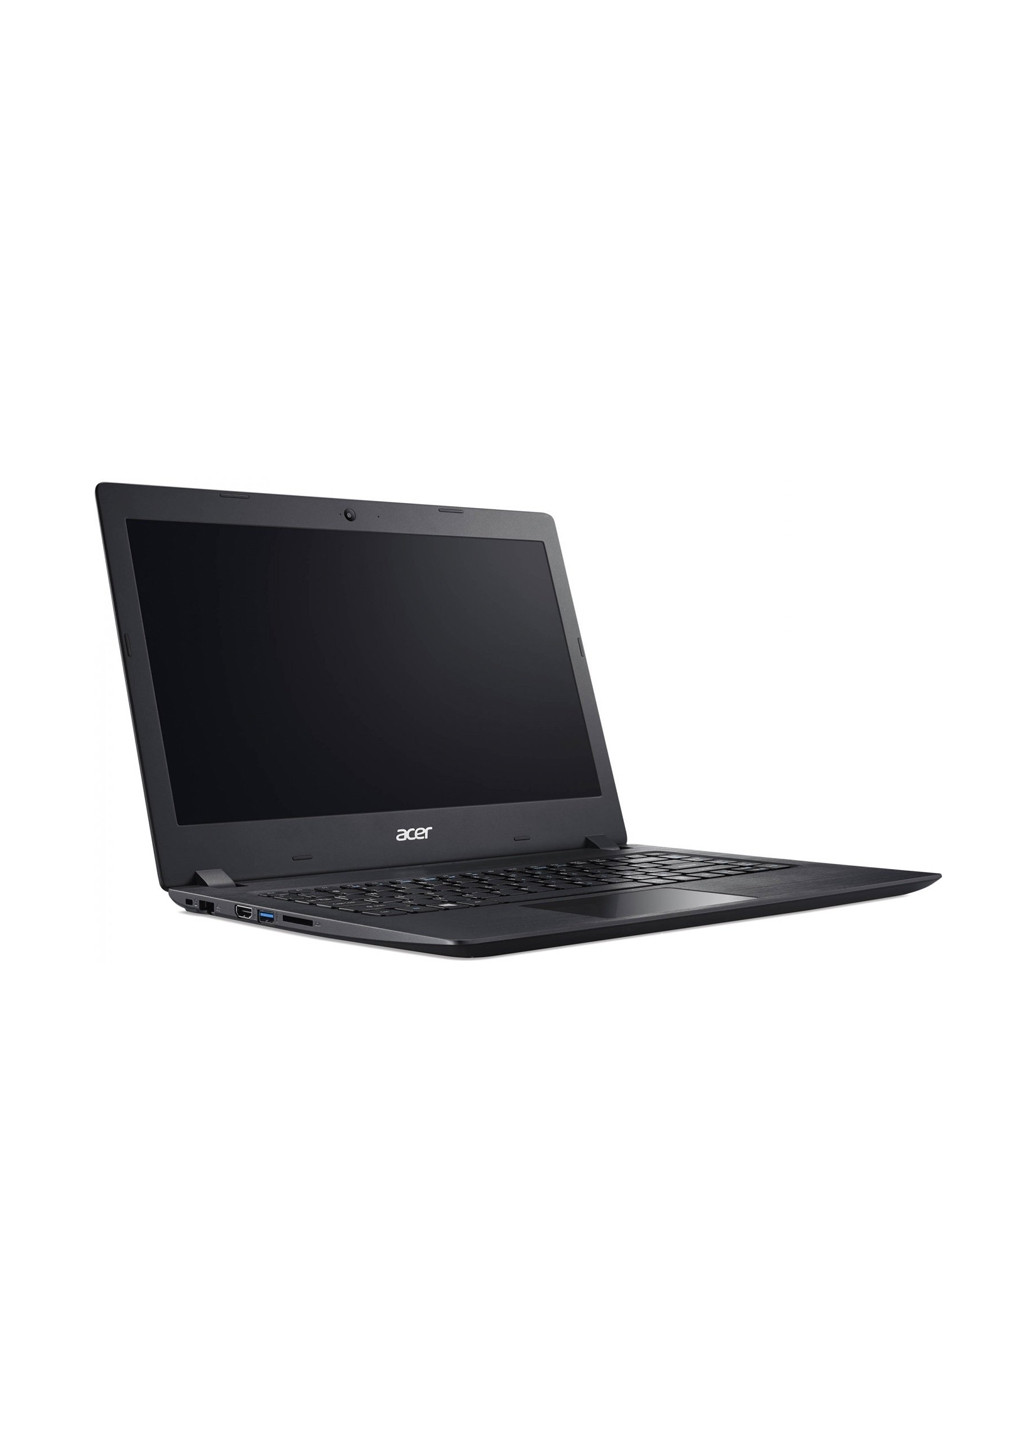 Ноутбук Acer aspire 3 a315-53g (nx.h9jeu.018) black (134076184)